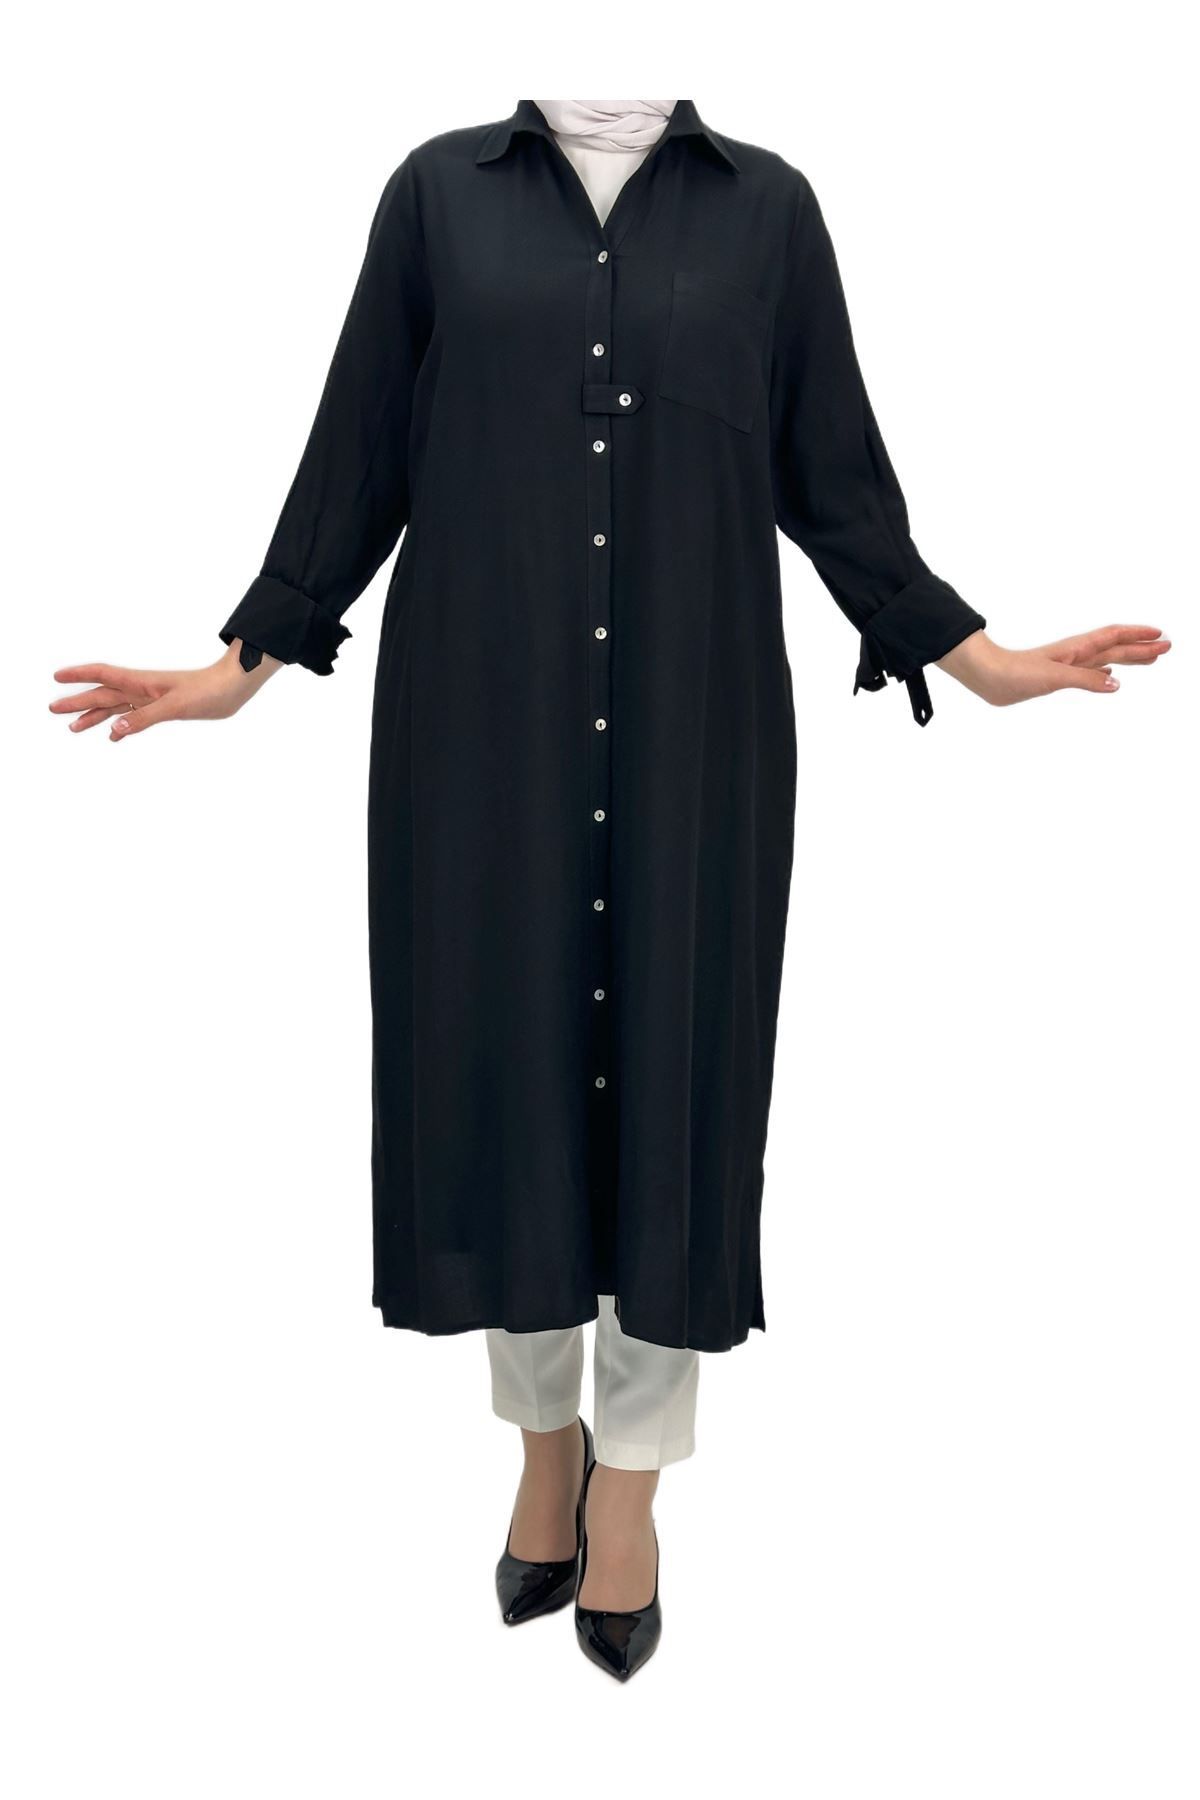 ottoman wear OTW60910 Uzun Büyük Beden Tunik Siyah